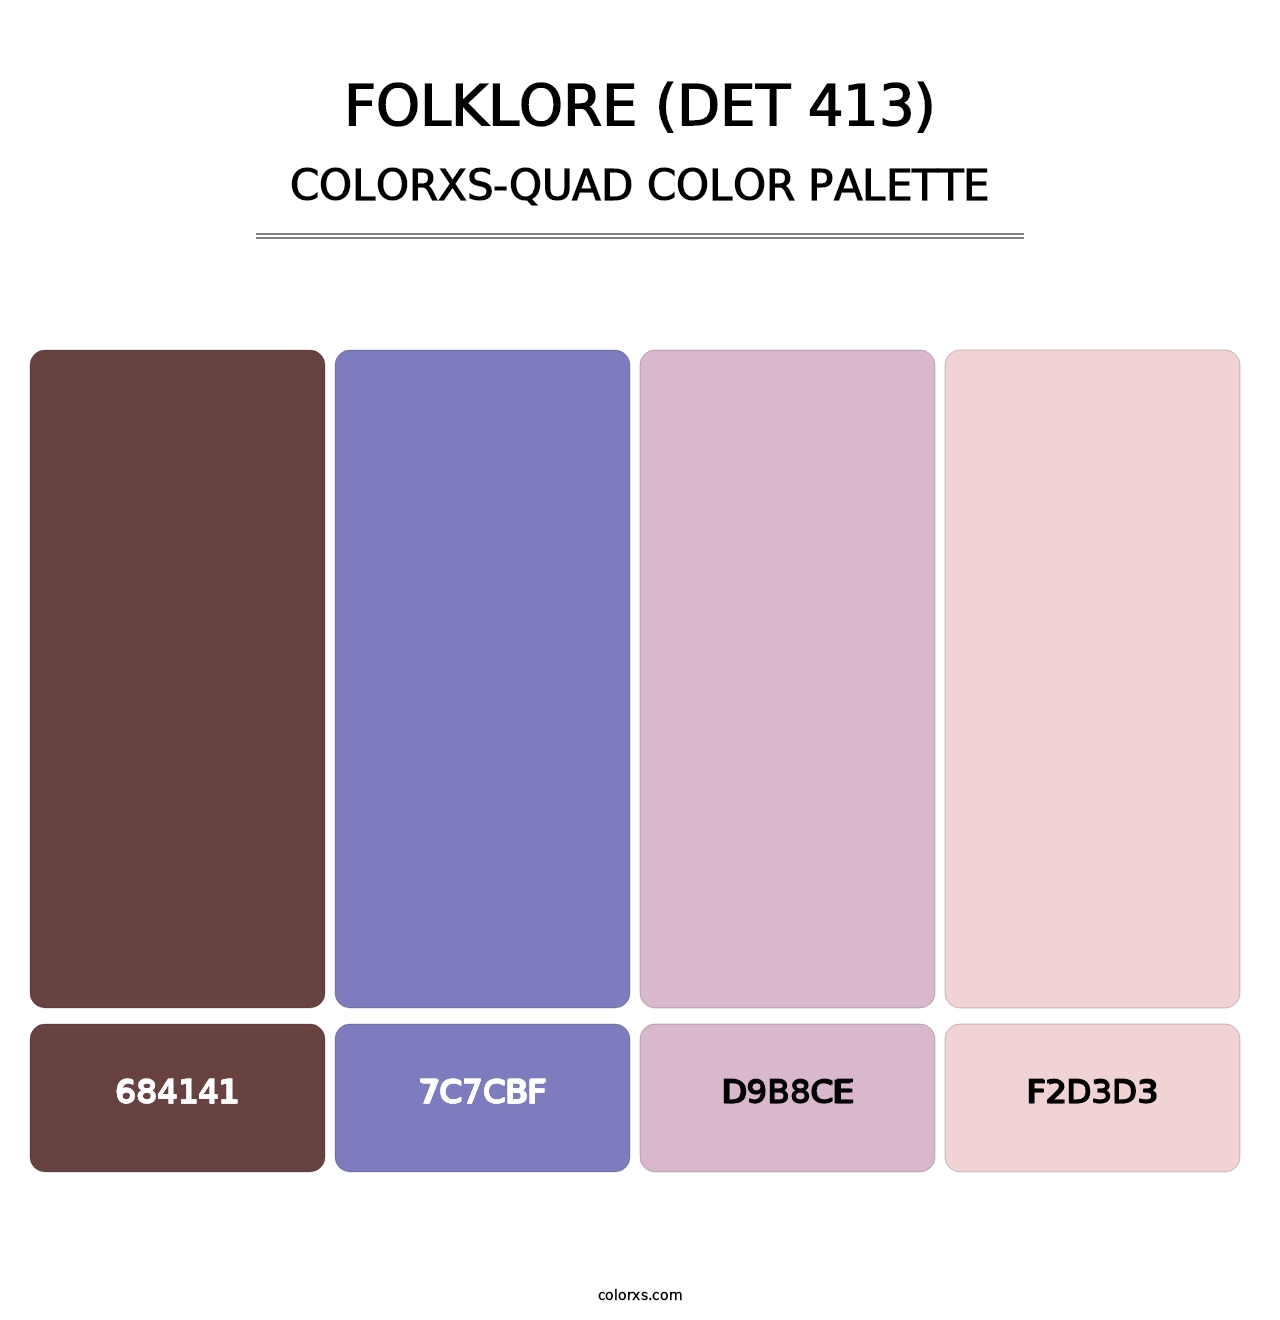 Folklore (DET 413) - Colorxs Quad Palette